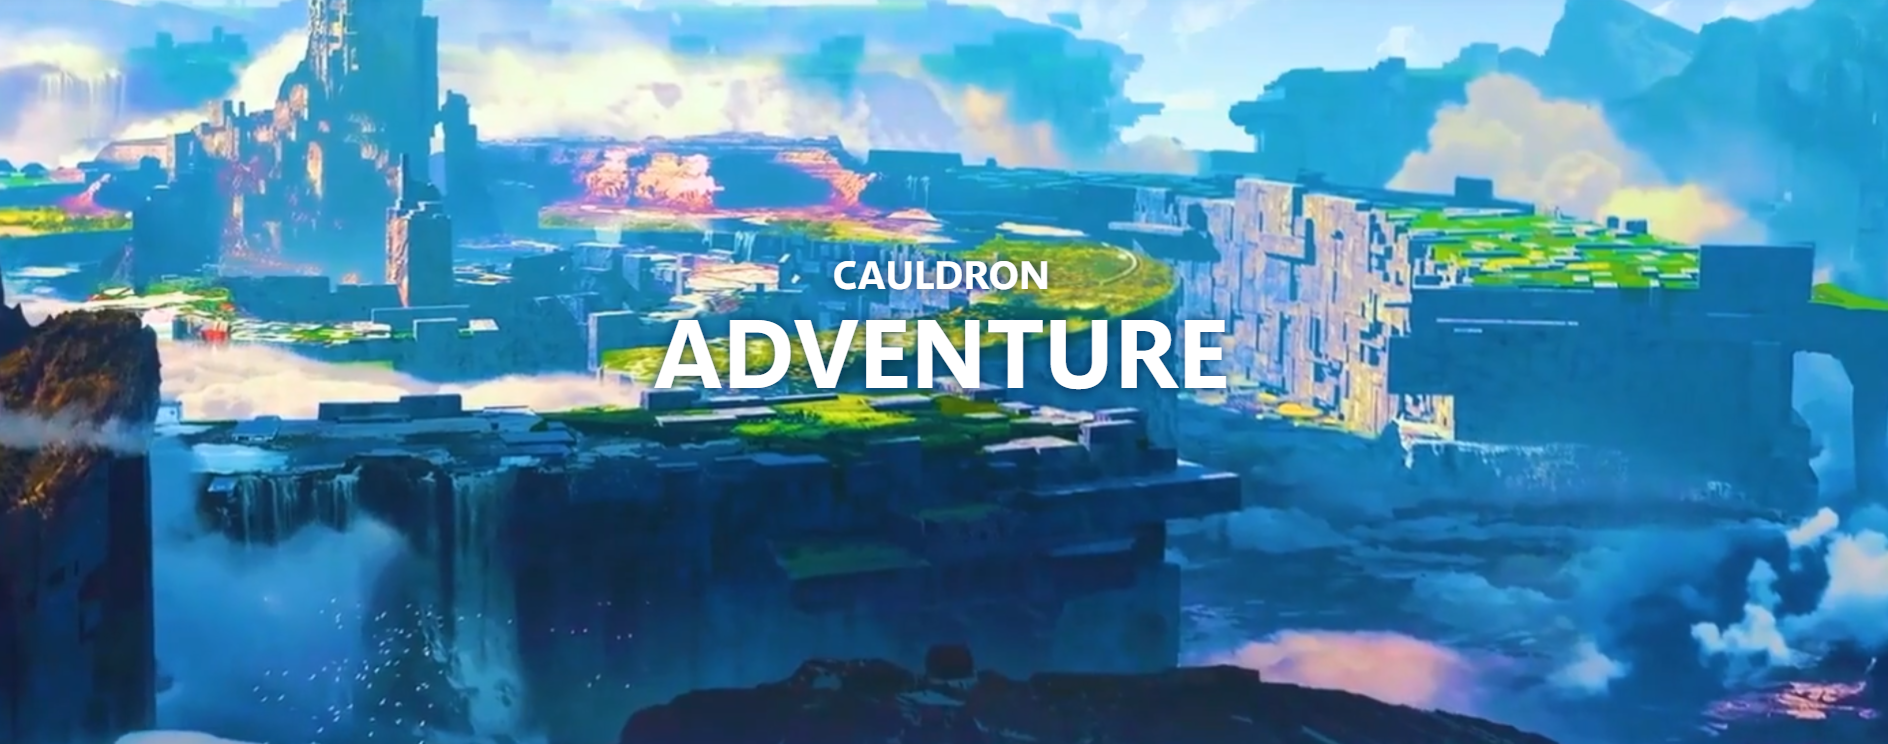 CauldronAdventure (2)